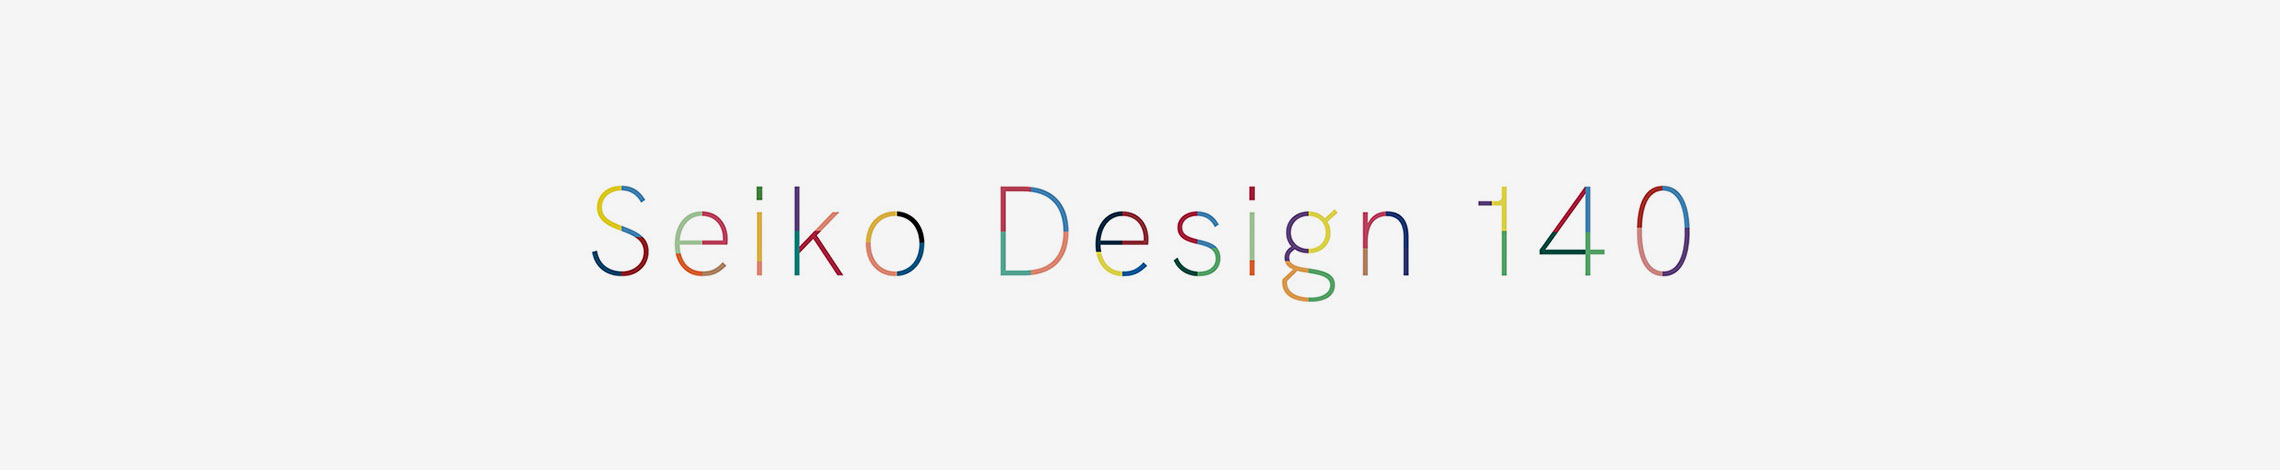 Seiko Design 140 のロゴ